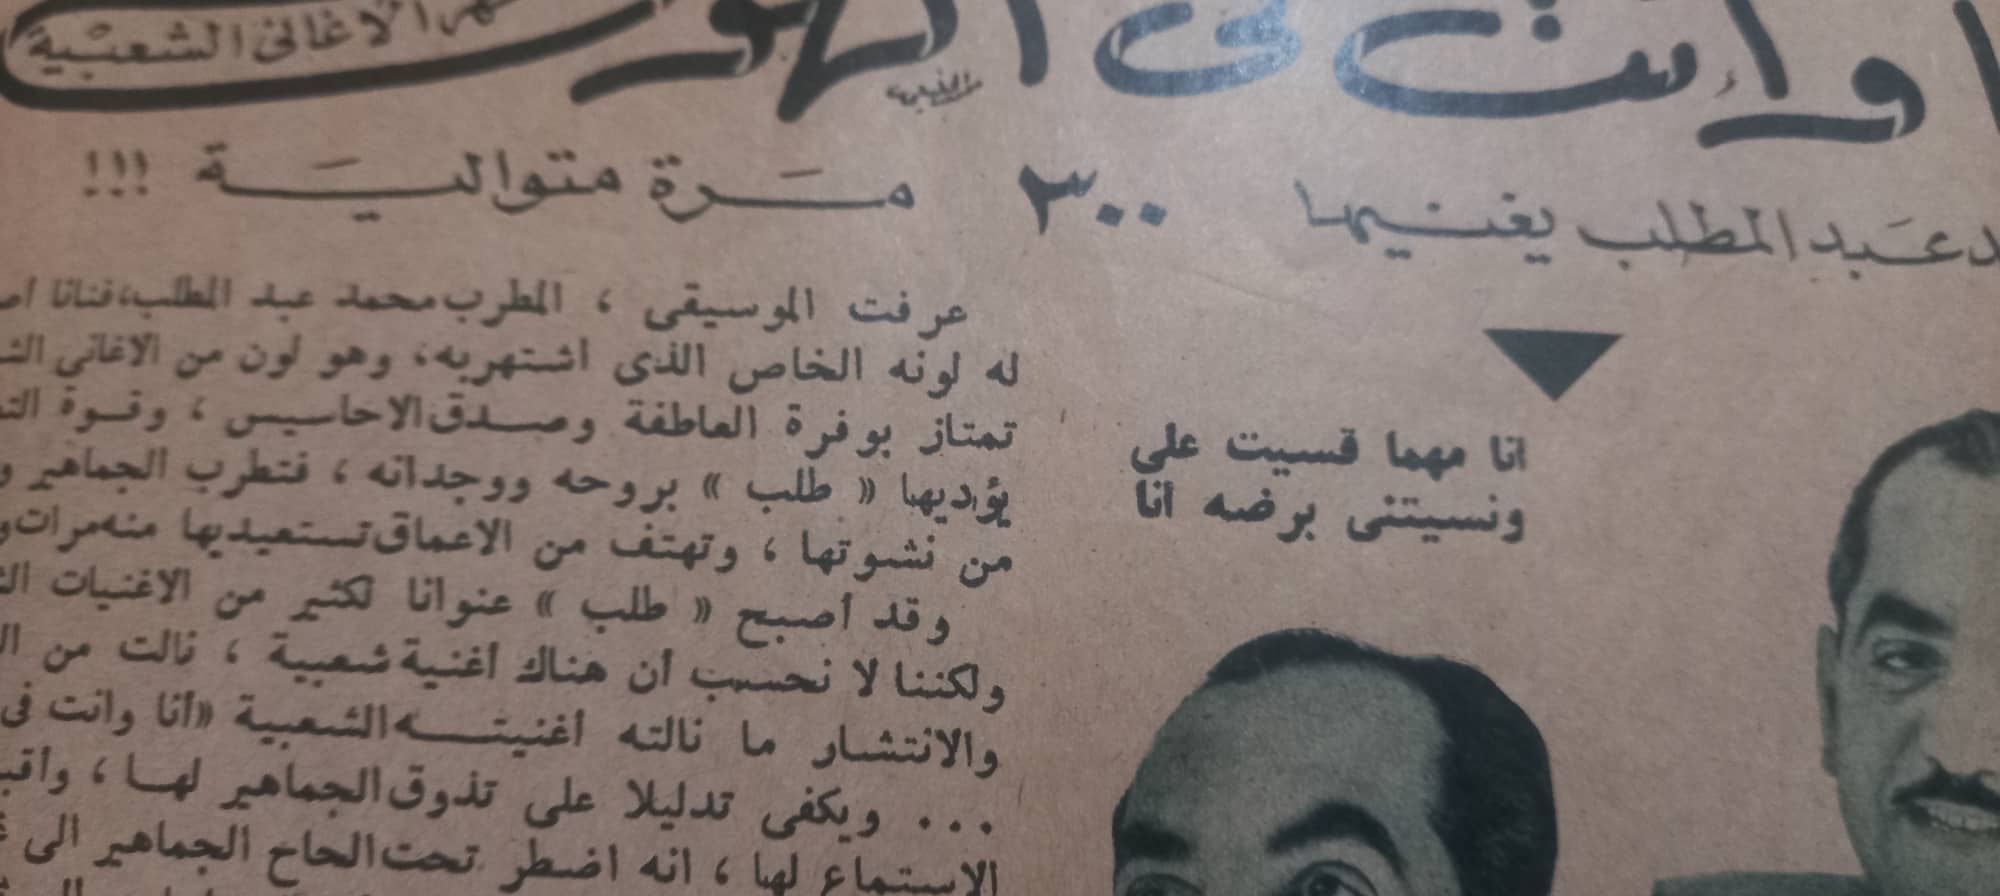 الفنان محمد عبد المطلب في أرشيف مجلة الفن عام 1950 